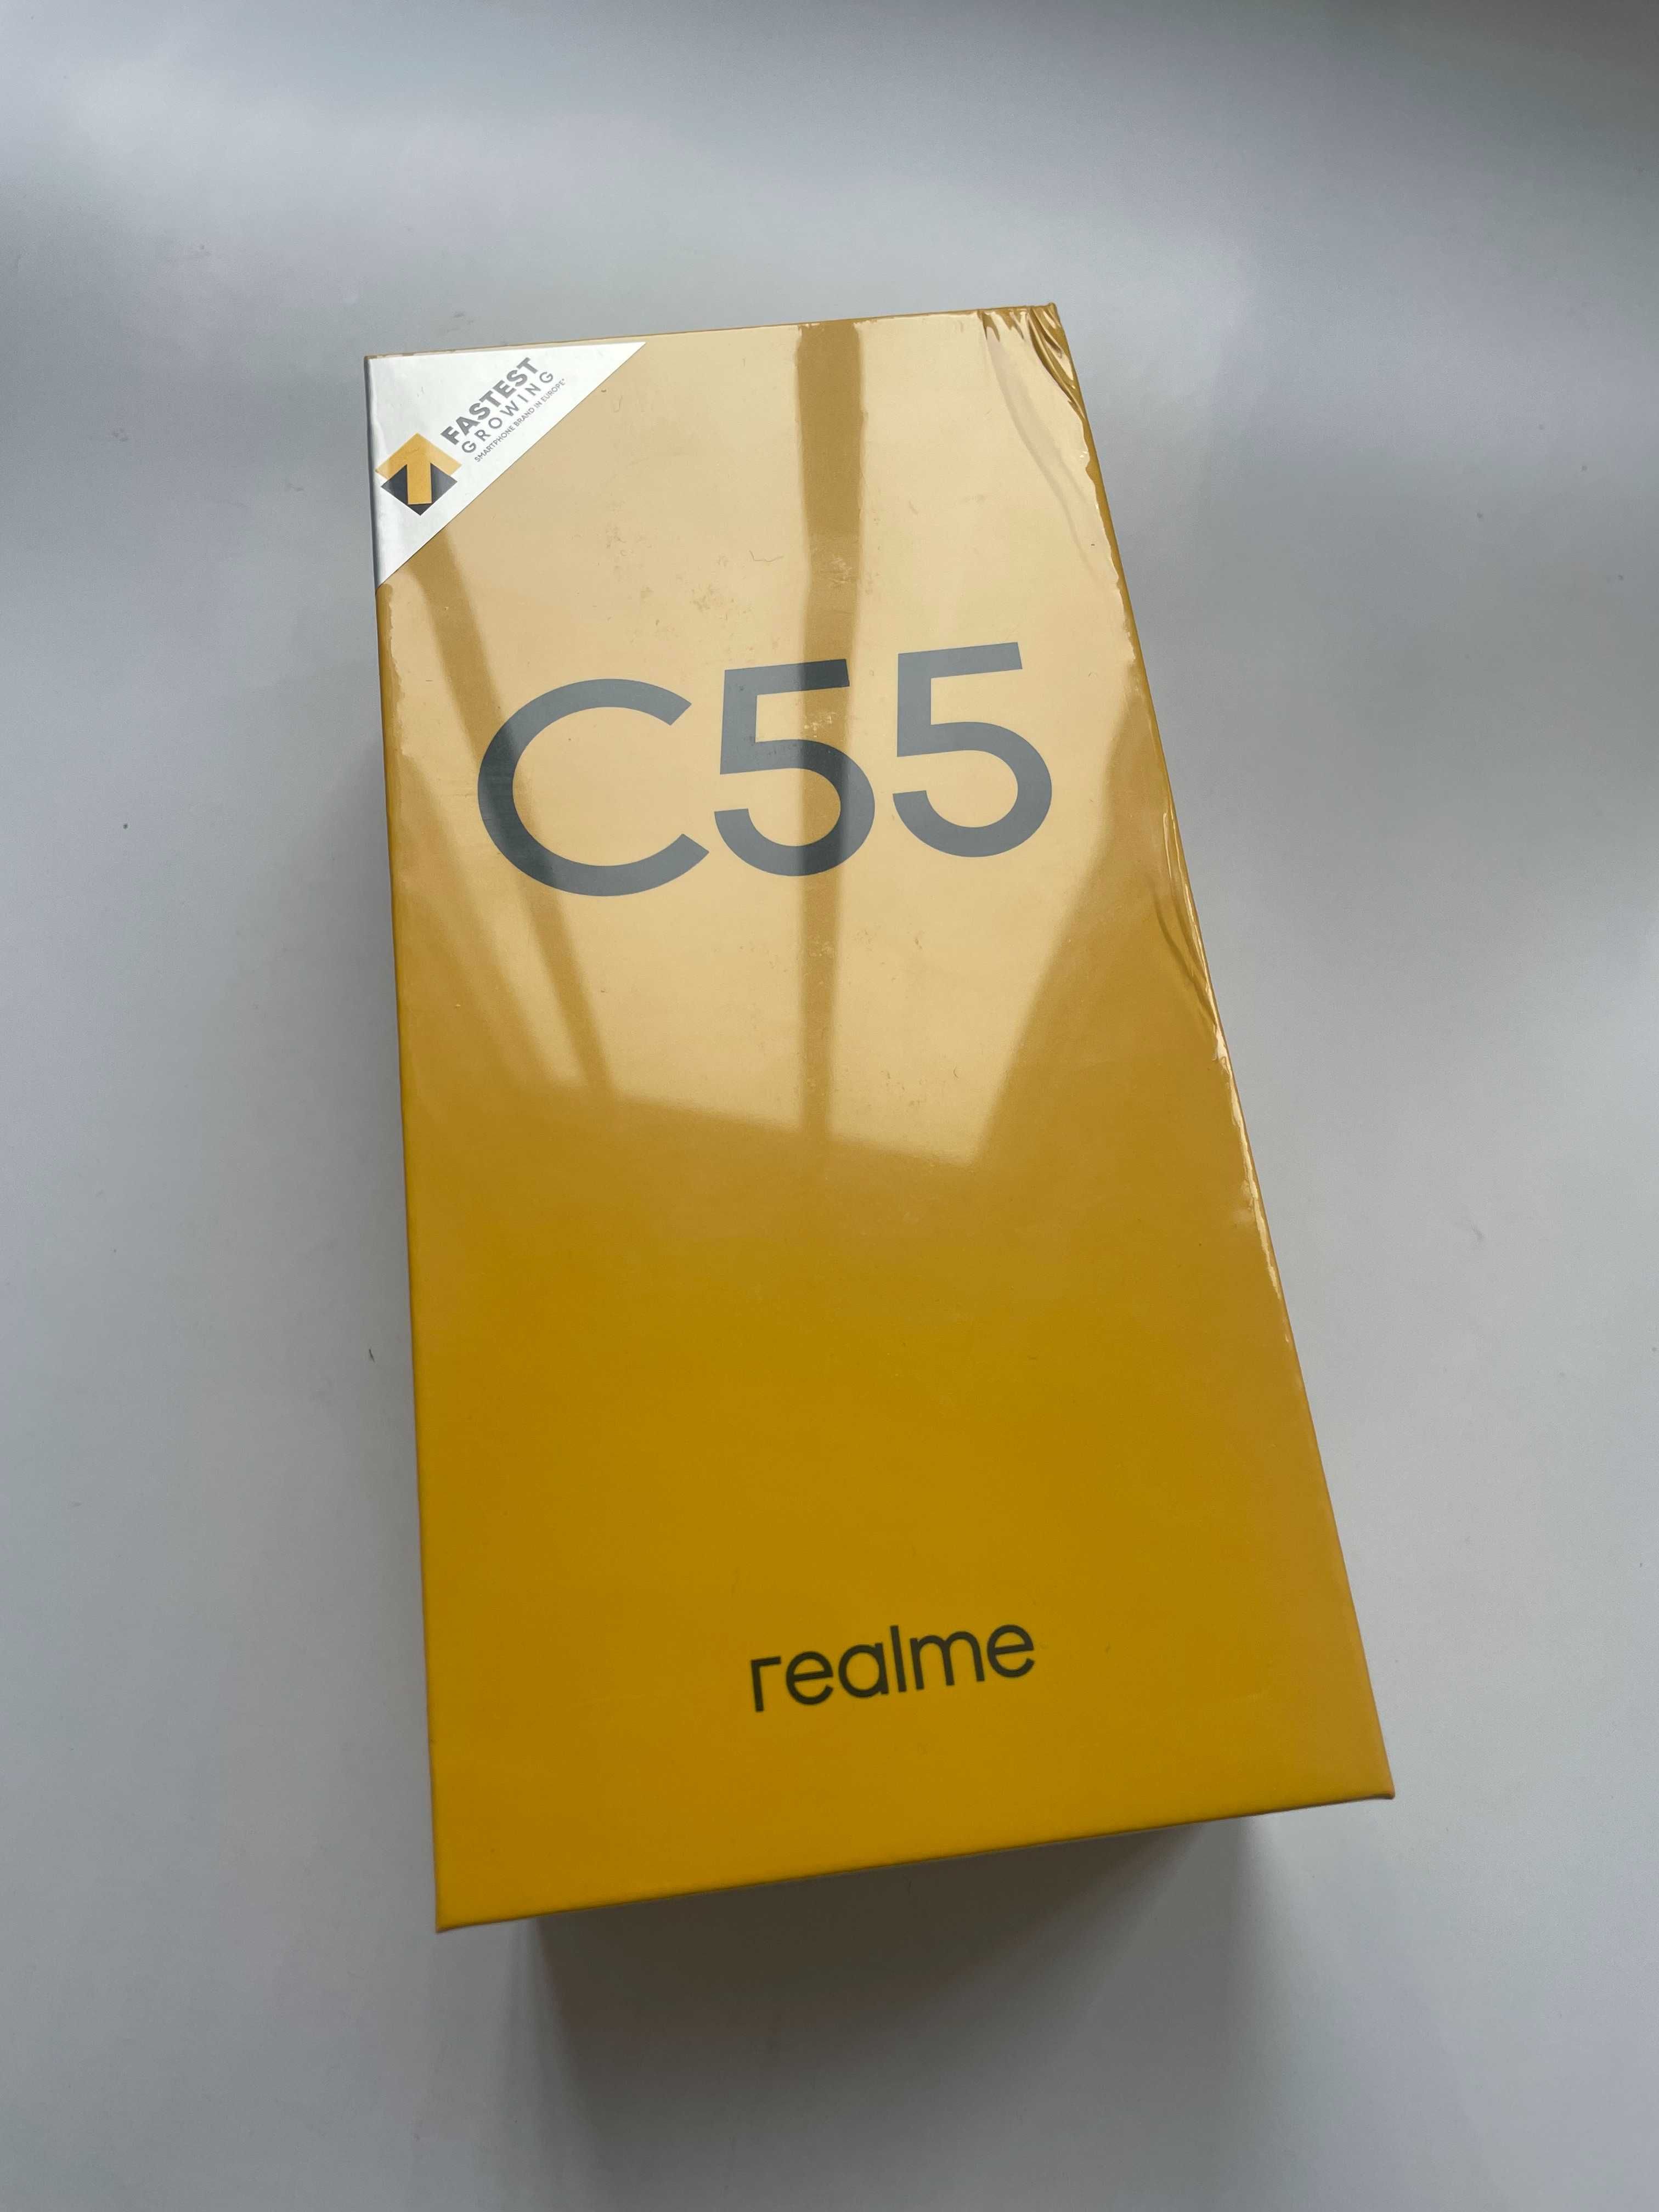 smartfon Realme c55, 128 GB, zafoliowany, gwarancja